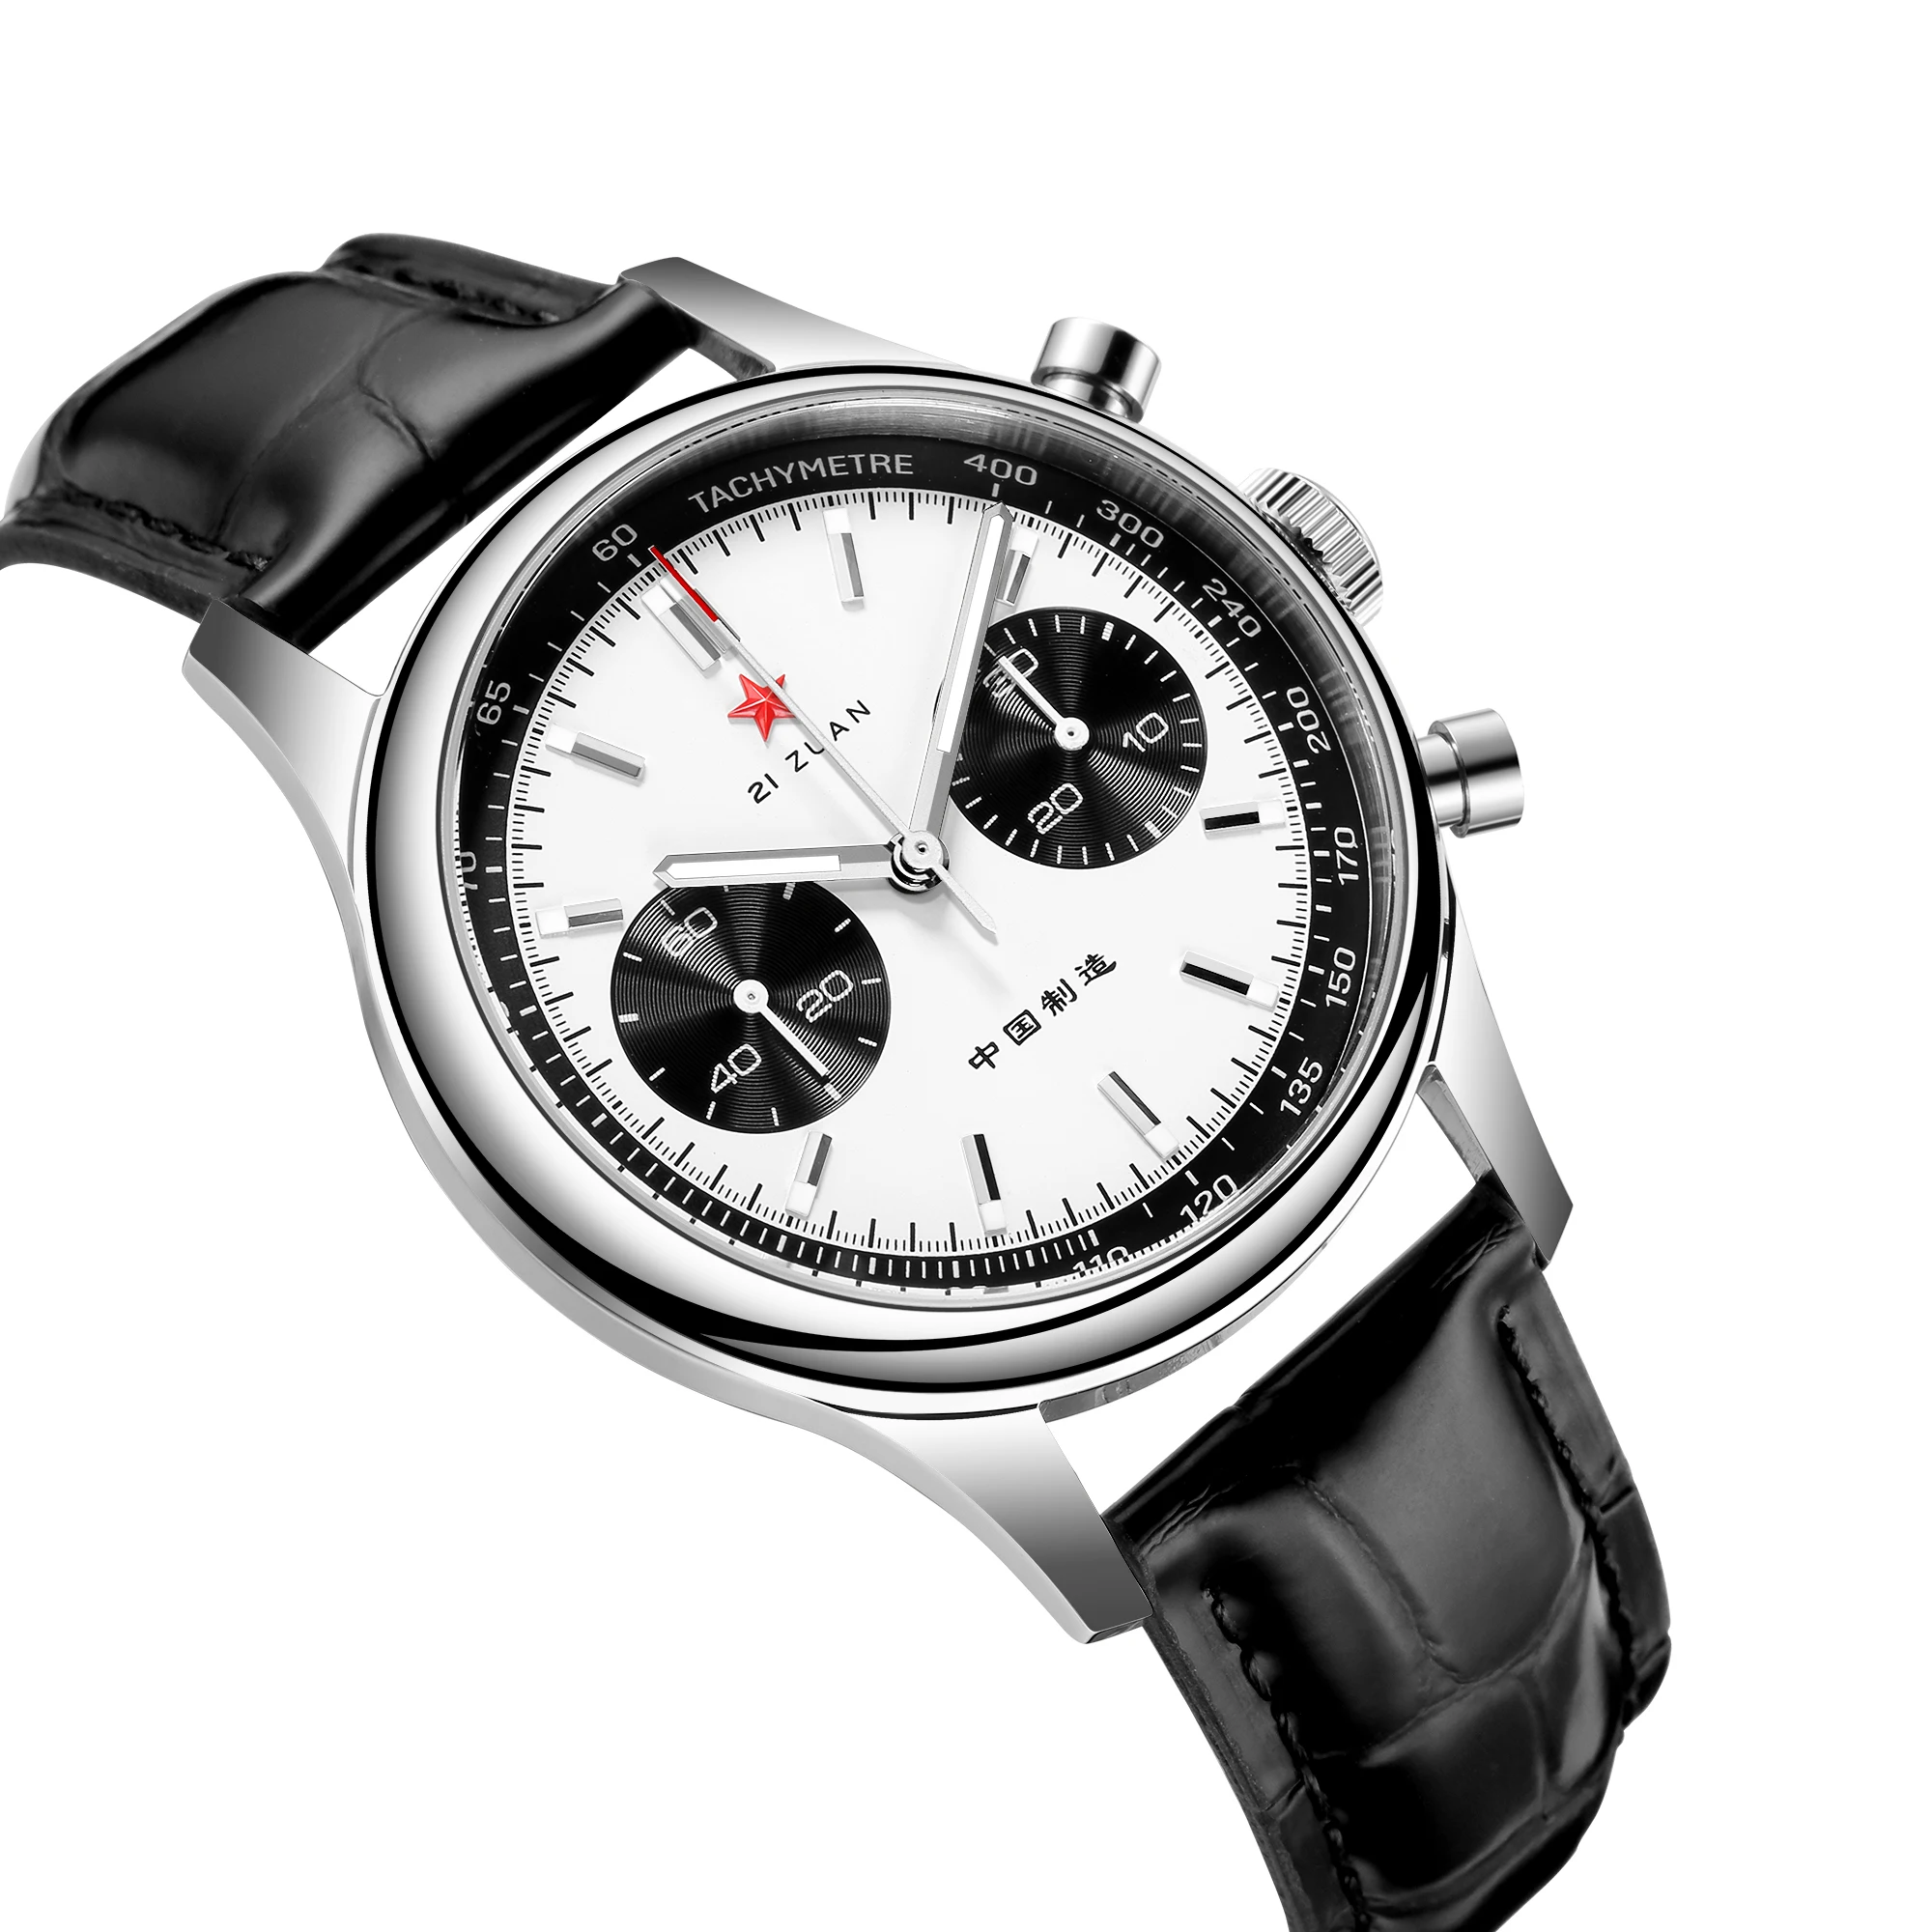 

Men 40mm Chronograph Watch Seagull 1963 Movement Swan-neck Sapphire Glass Mechanical Watches Luminous Hands